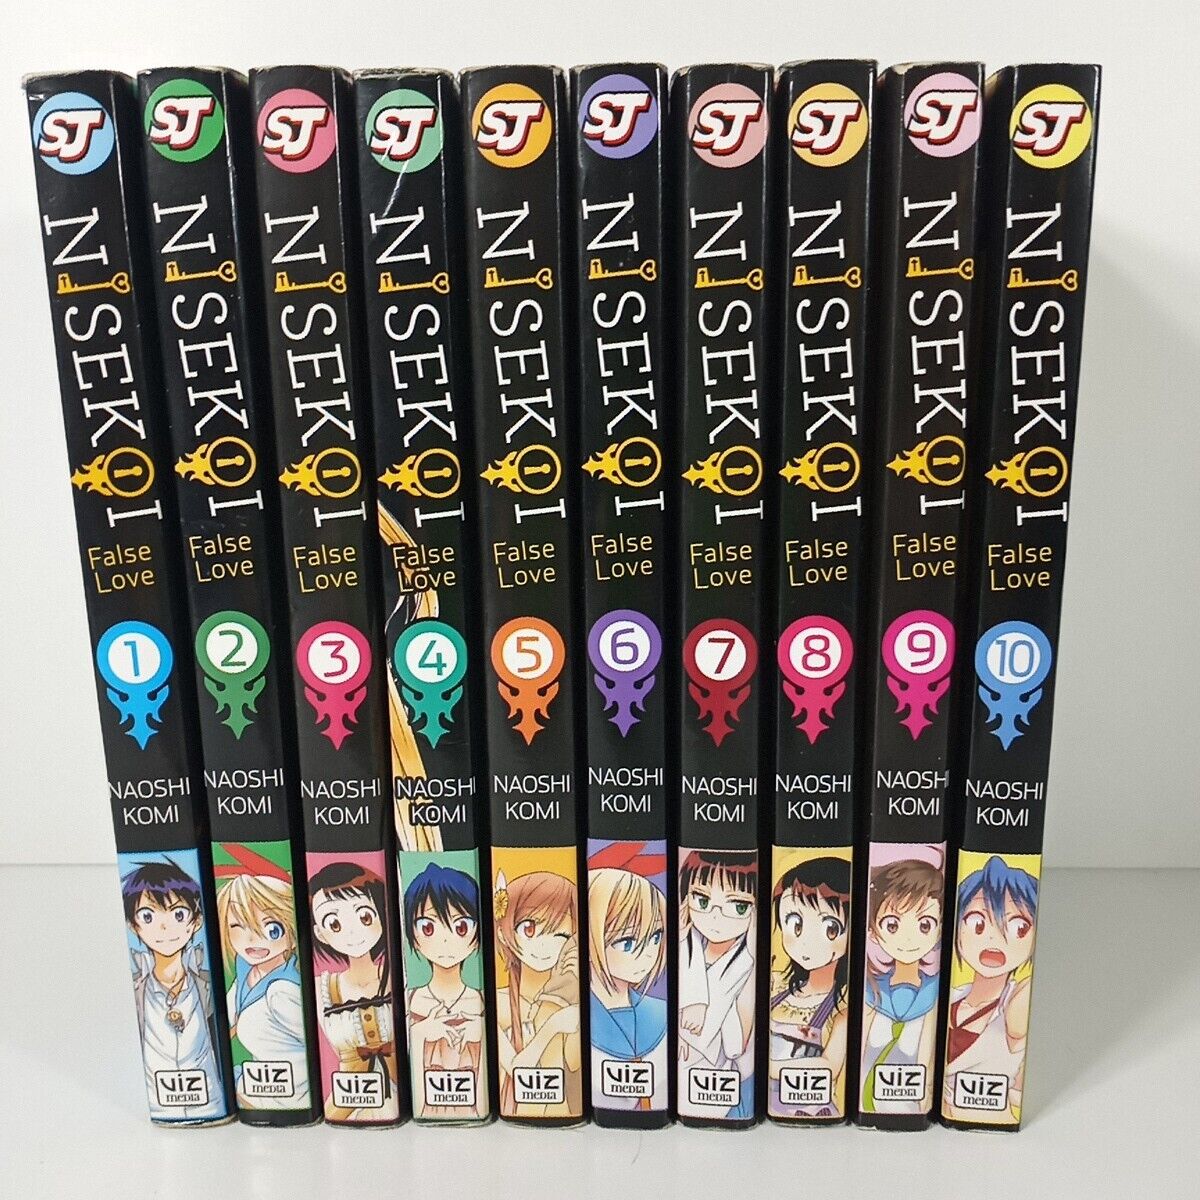 Nisekoi Manga Volumes 1-10 Set